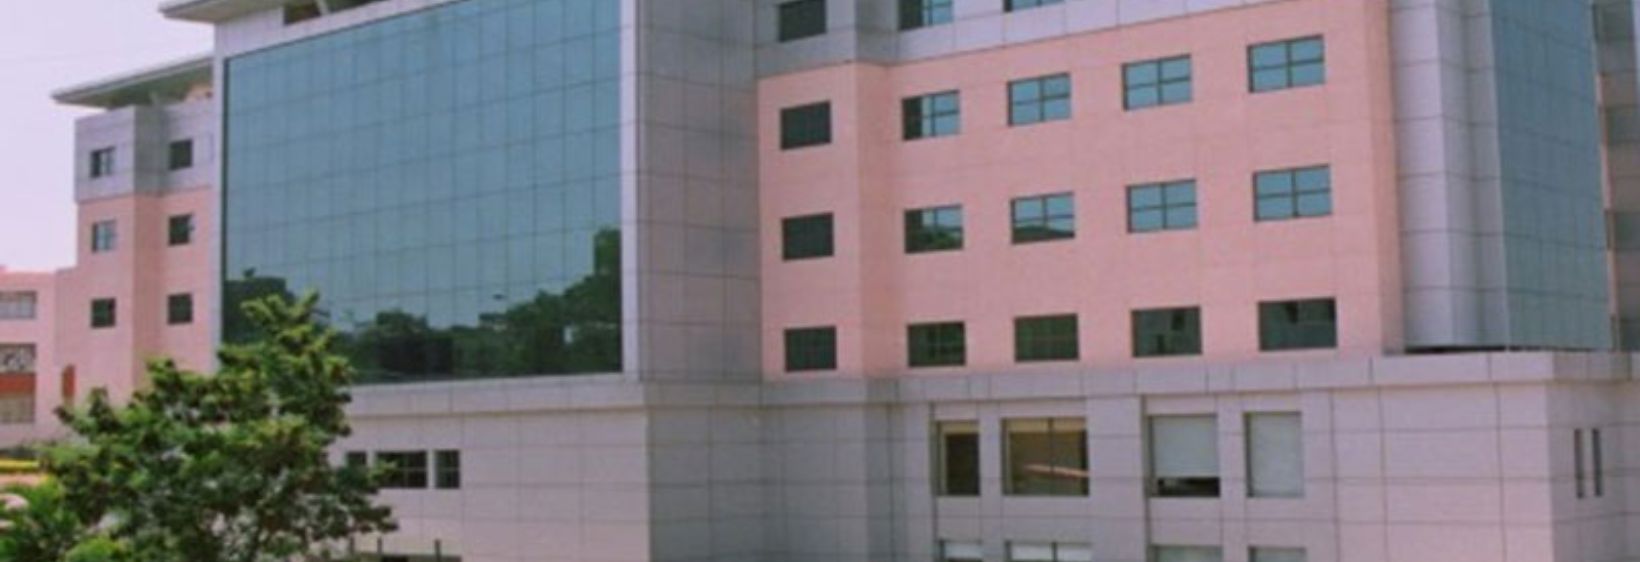 Supraja College of Nursing - Bangalore